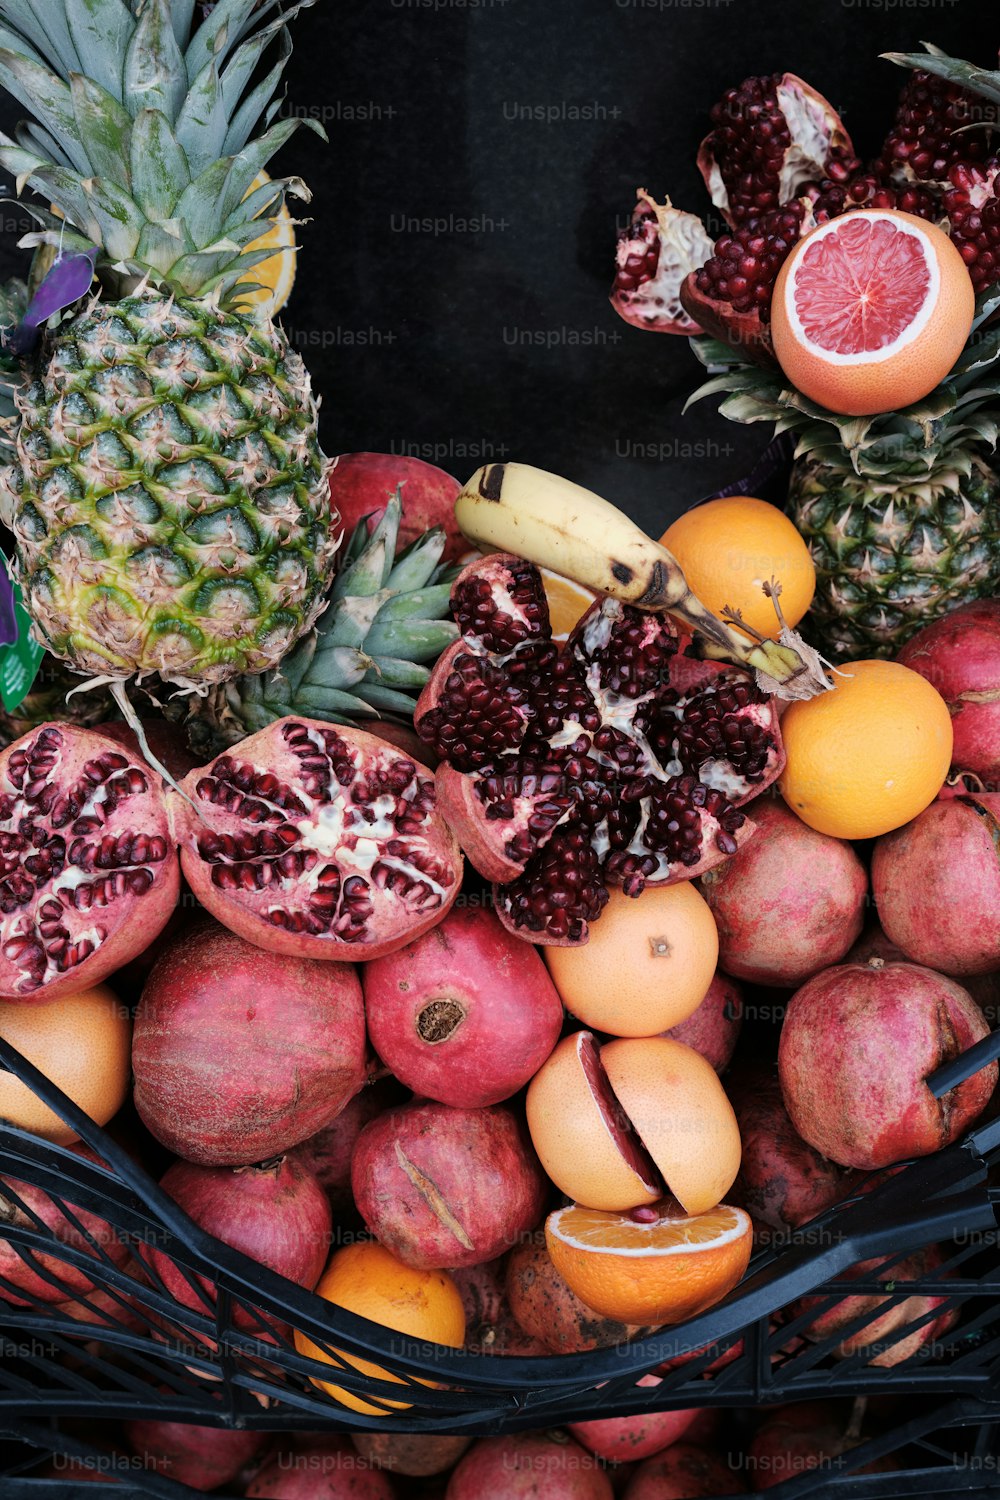 Un panier rempli de nombreux types de fruits